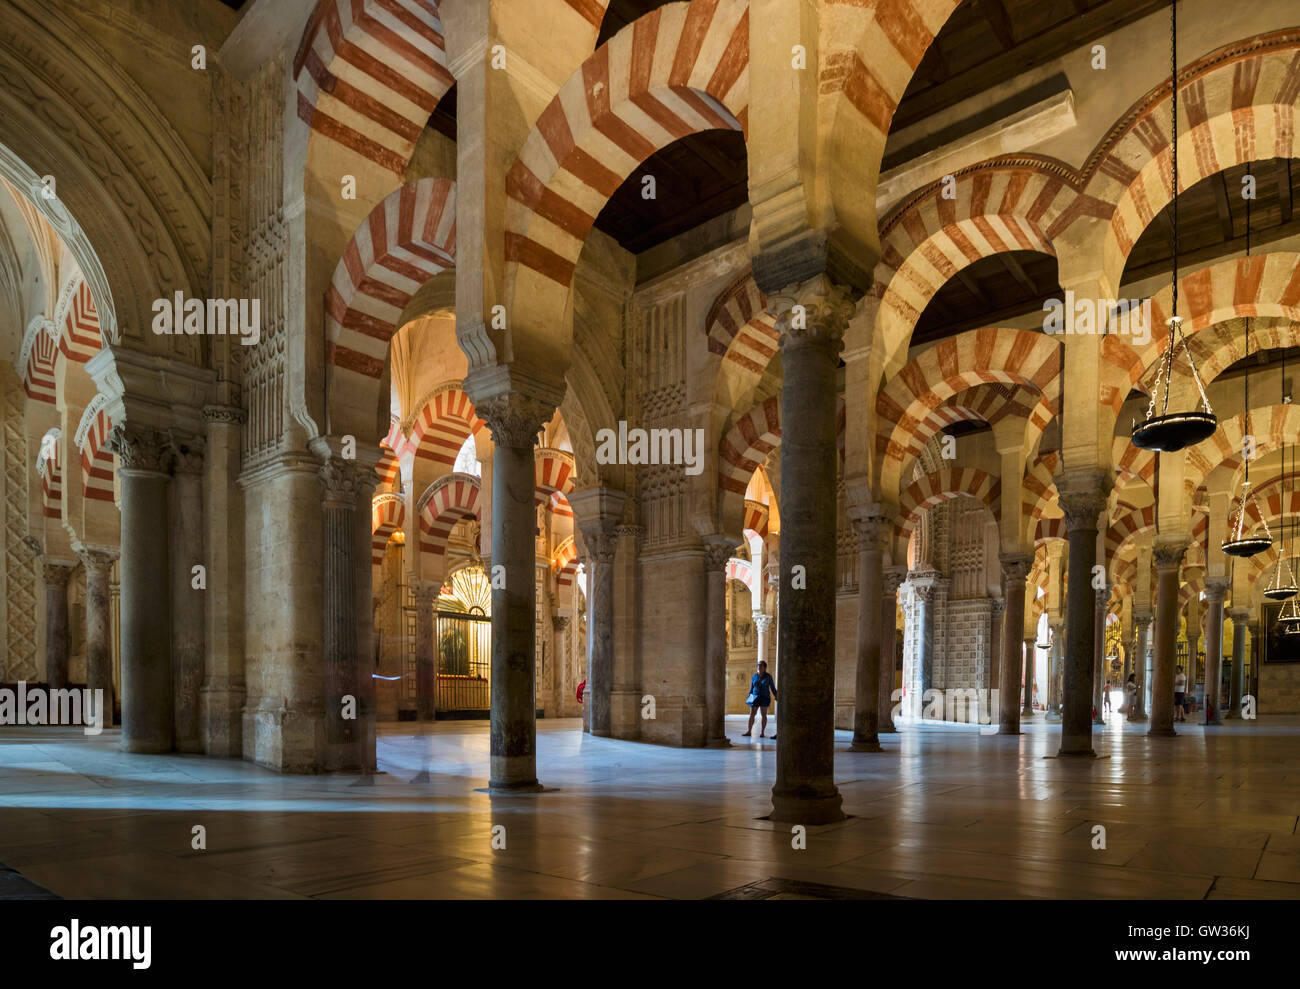 Cordoba, Cordoue, Andalousie, province du sud de l'Espagne. L'intérieur de la Mezquita, la Grande Mosquée. Banque D'Images